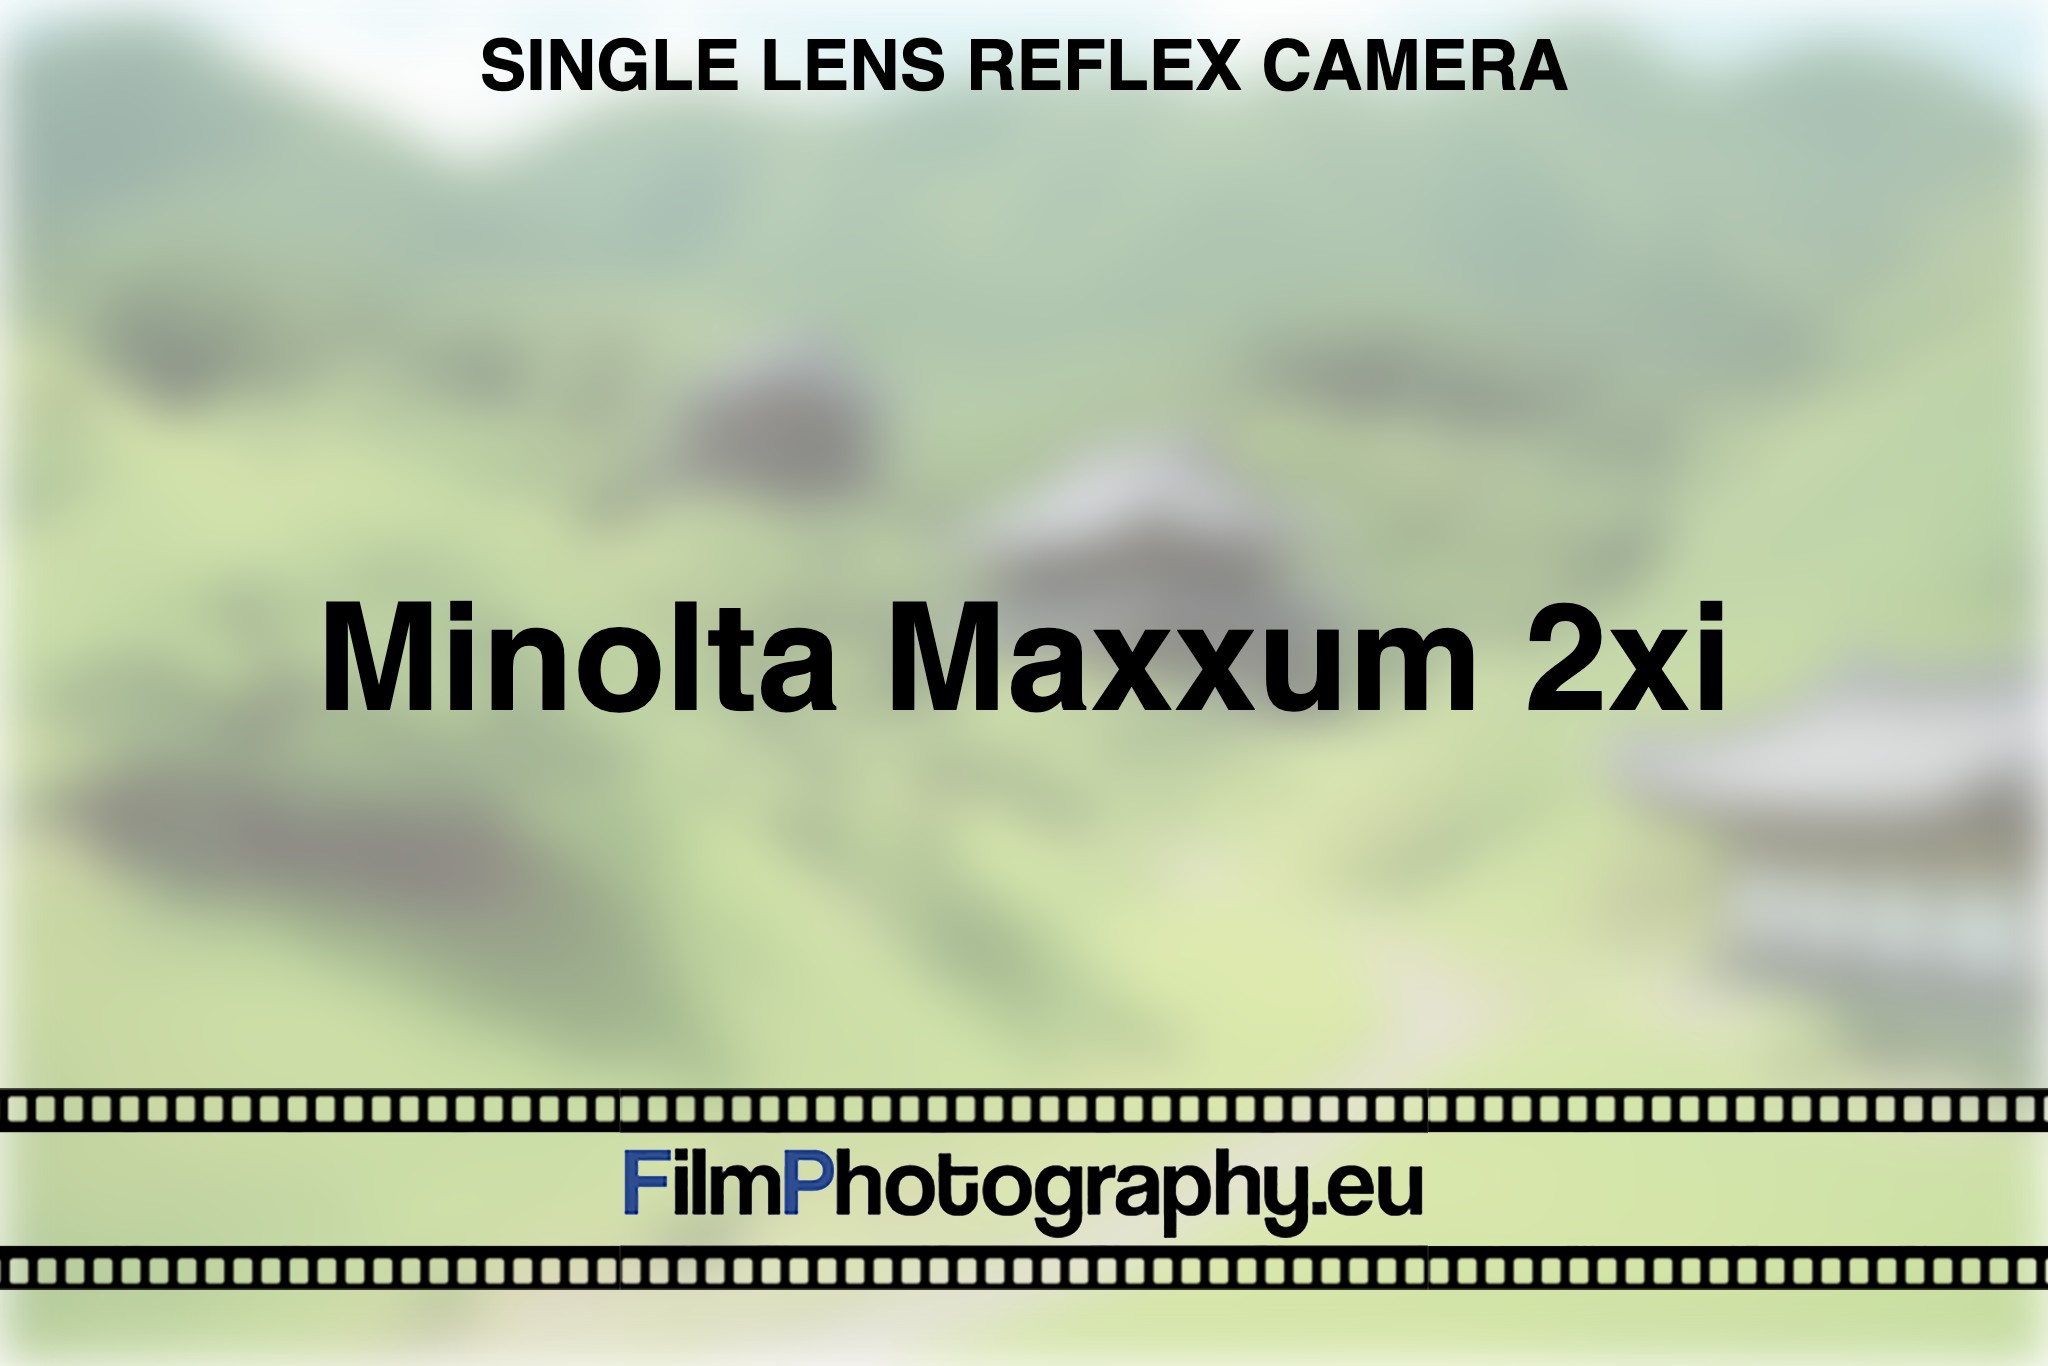 minolta-maxxum-2xi-single-lens-reflex-camera-bnv